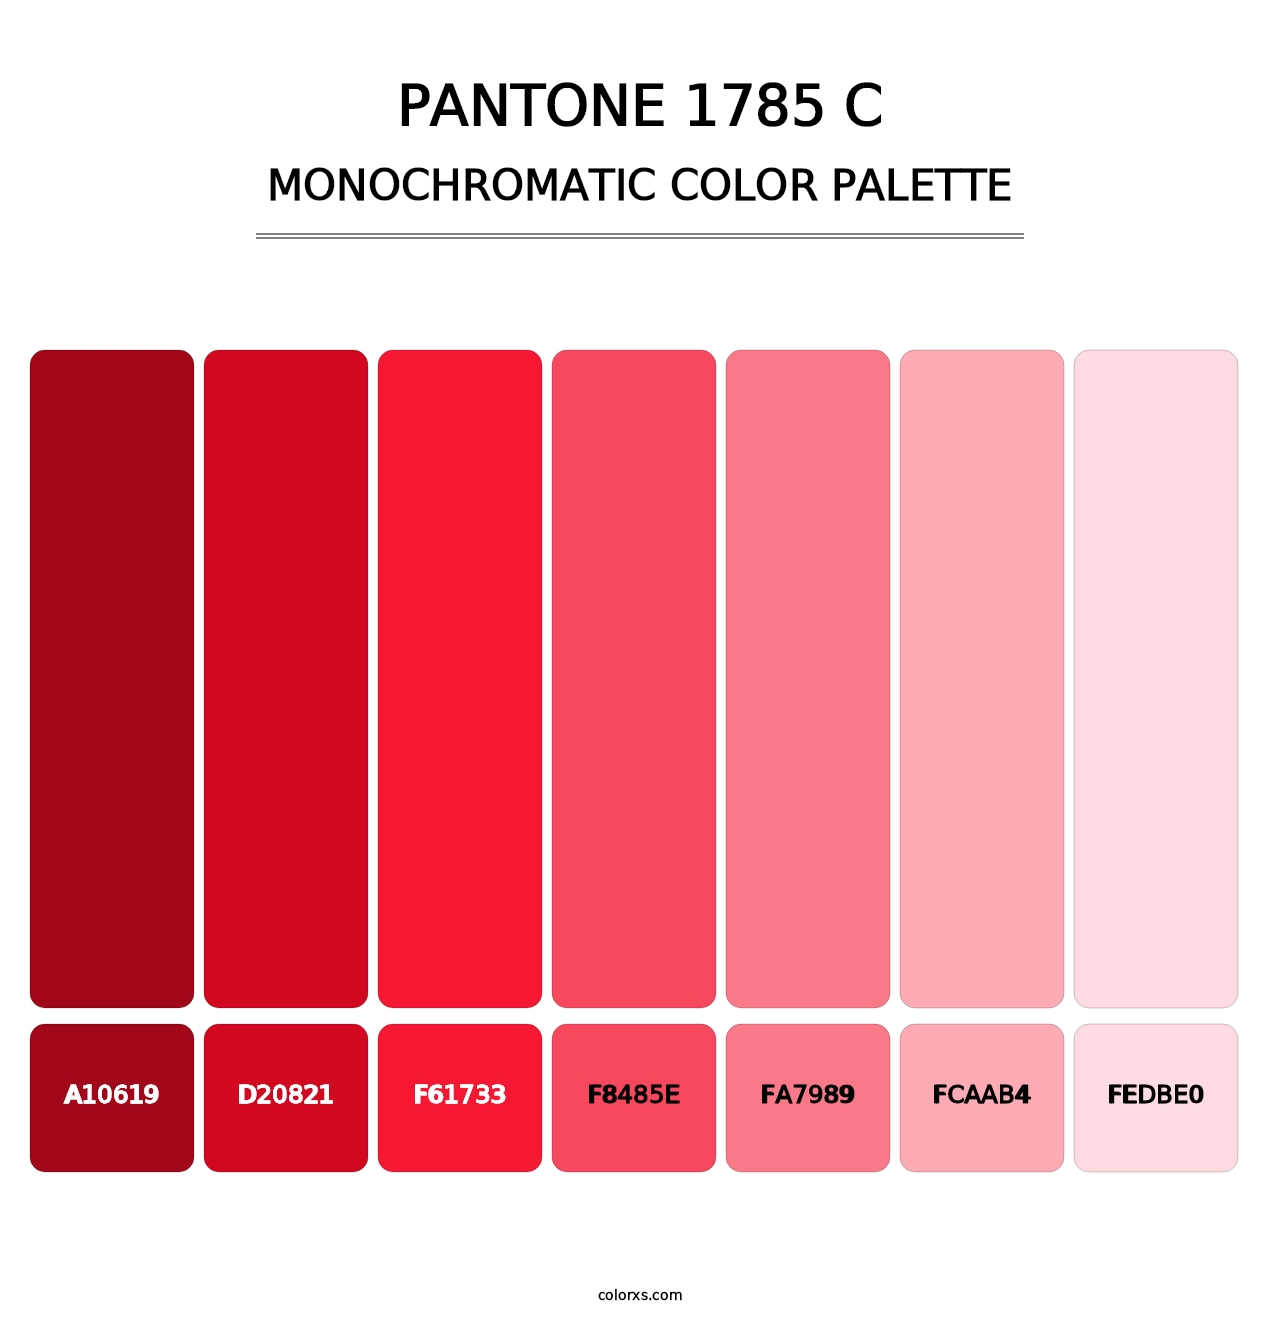 PANTONE 1785 C - Monochromatic Color Palette